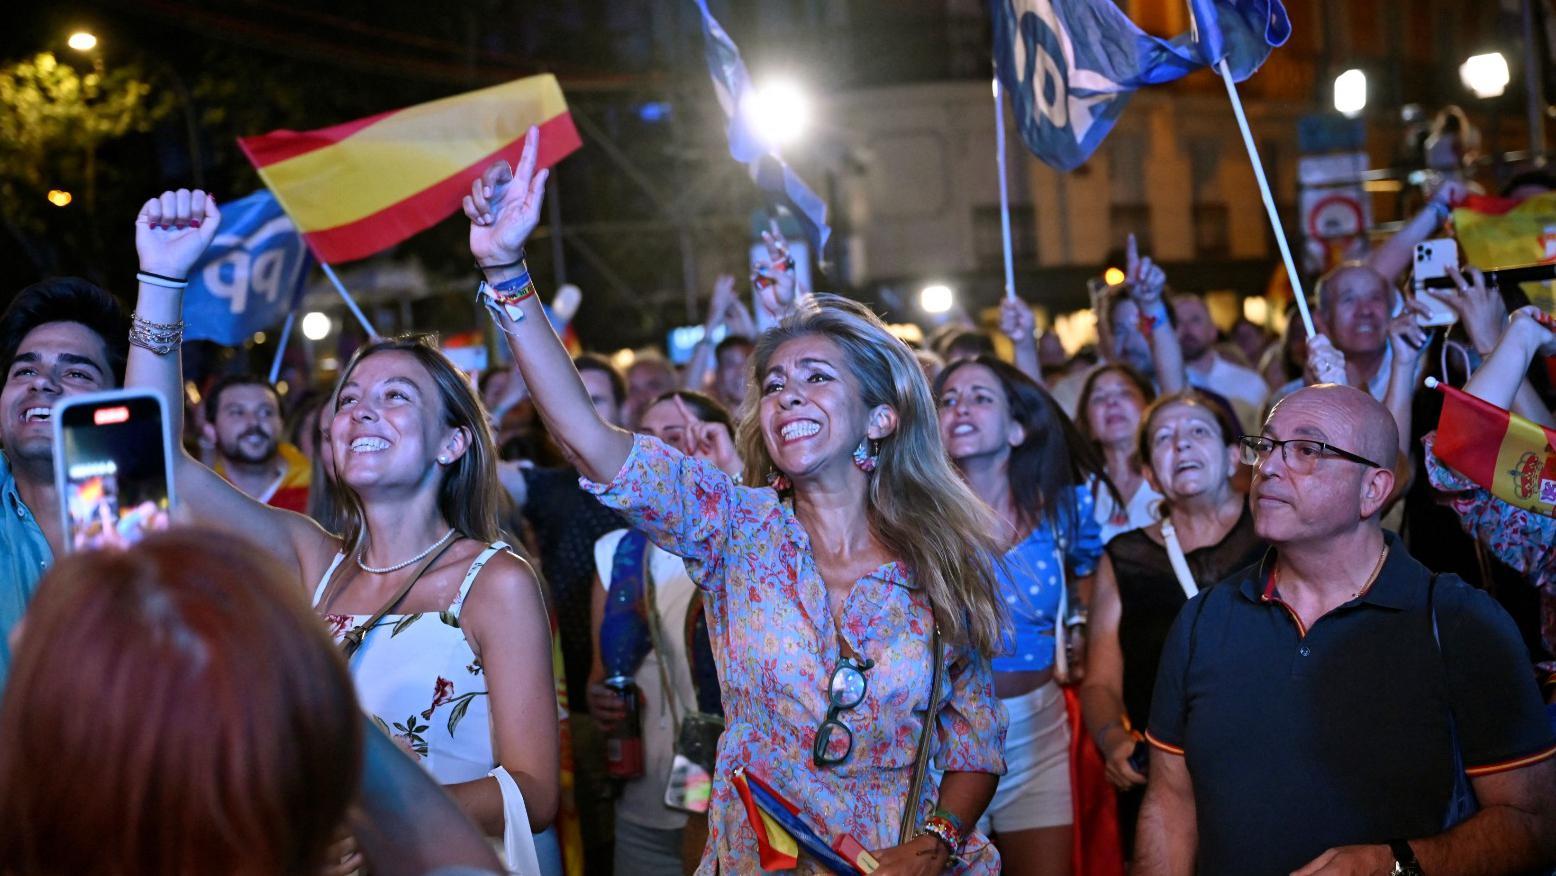 El conservador PP gana las elecciones en Espana pero tendra dificil gobernar